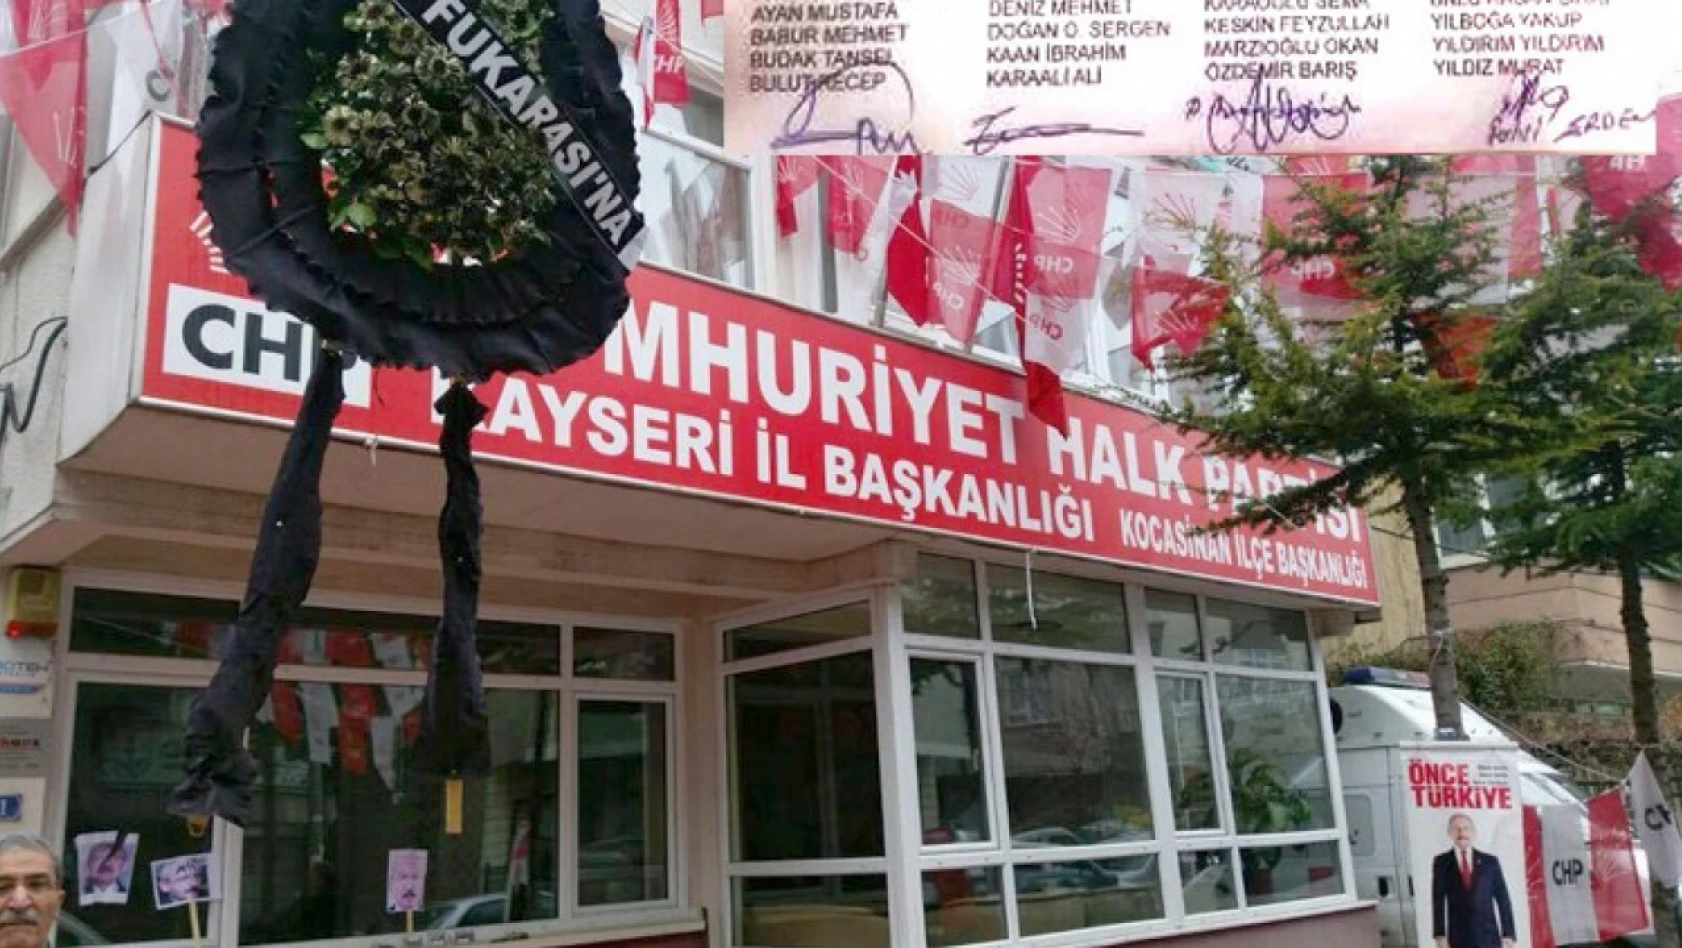 CHP Kayseri'den Kılıçdaroğlu'na destek sayısı değişti mi?